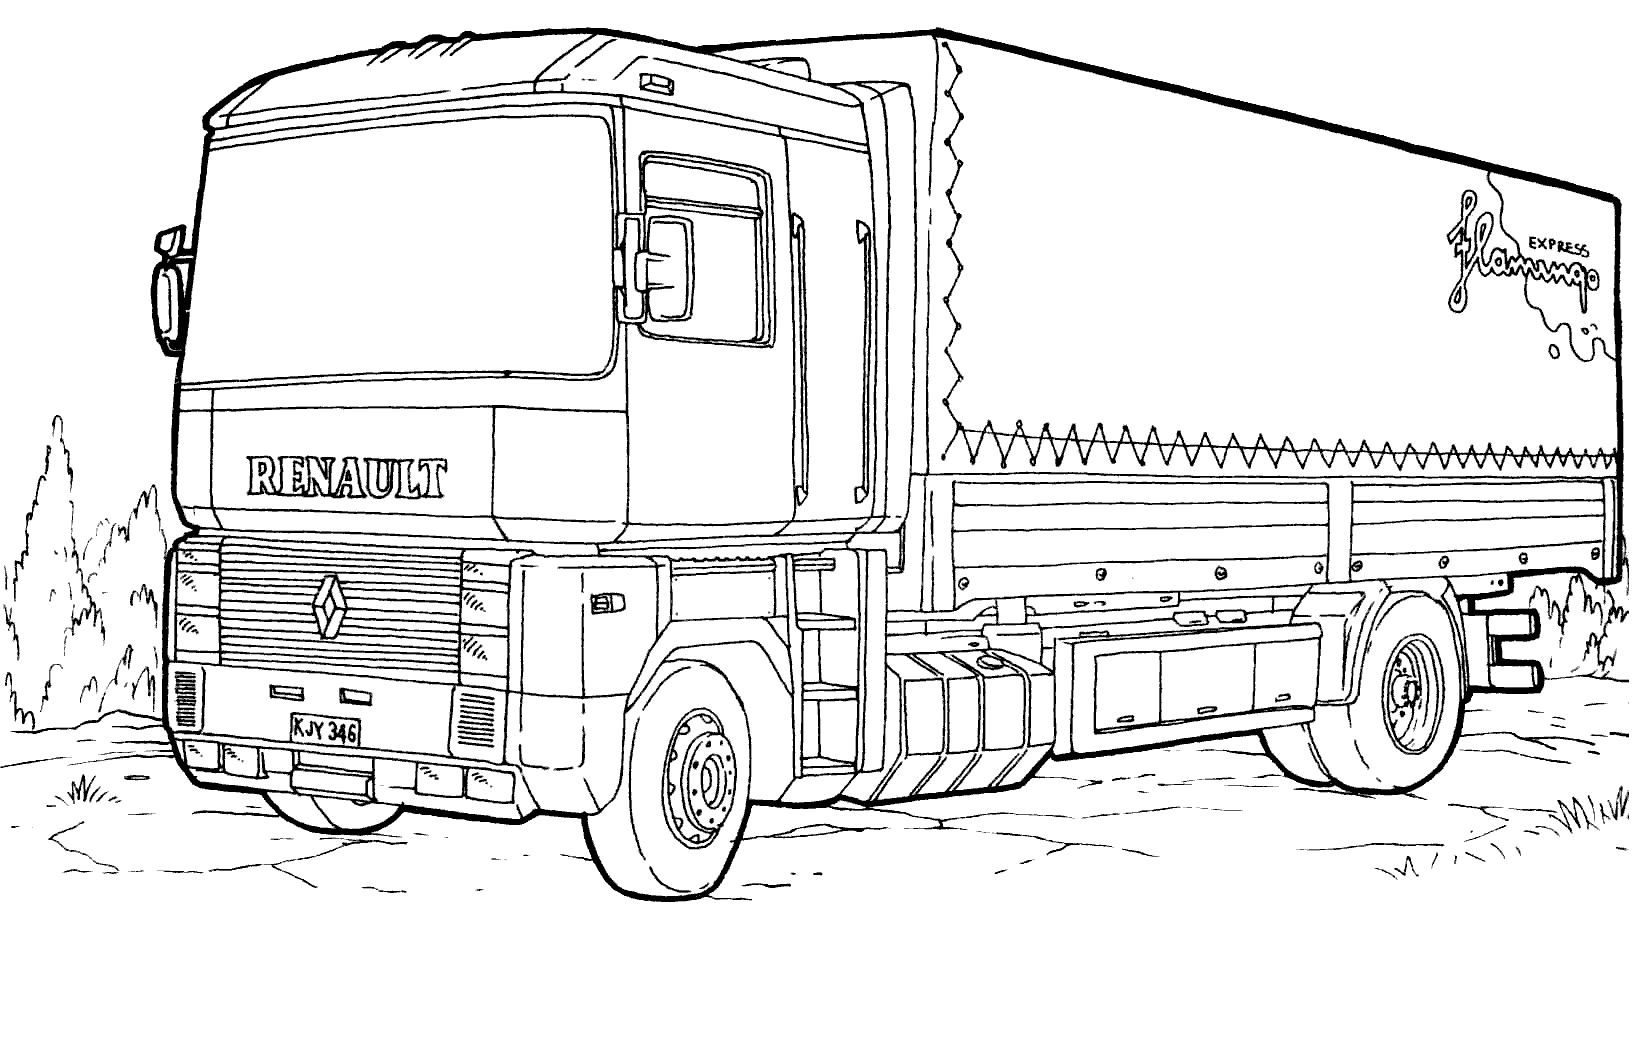 Dạy bé vẽ và tô màu Xe tải chở cá (Truck car drawing and coloring for kids)  - YouTube